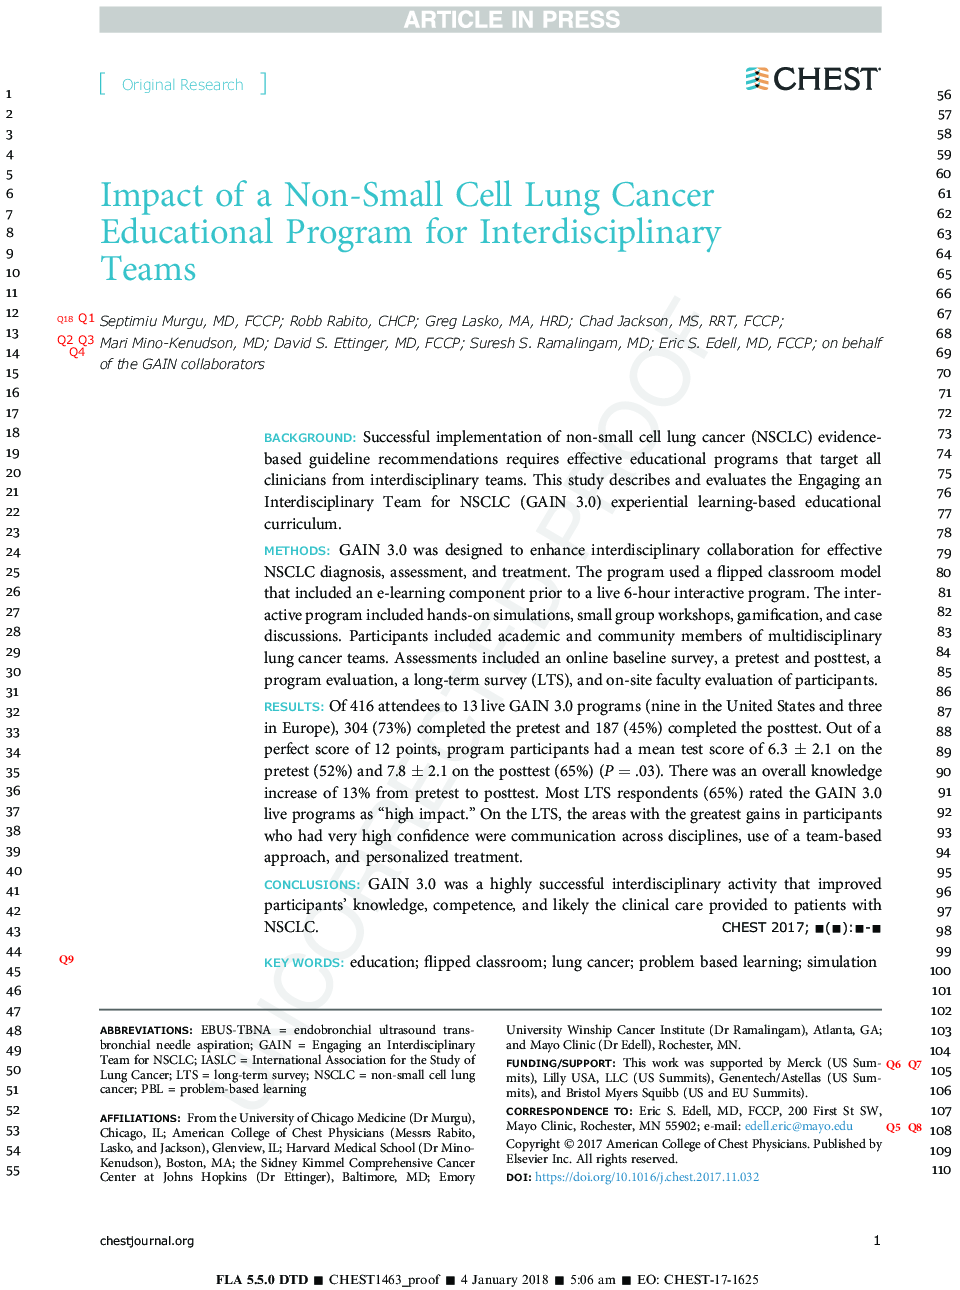 تأثیر یک برنامه آموزشی سرطان سلول های غیر سلولی برای تیم های بین رشته ای 